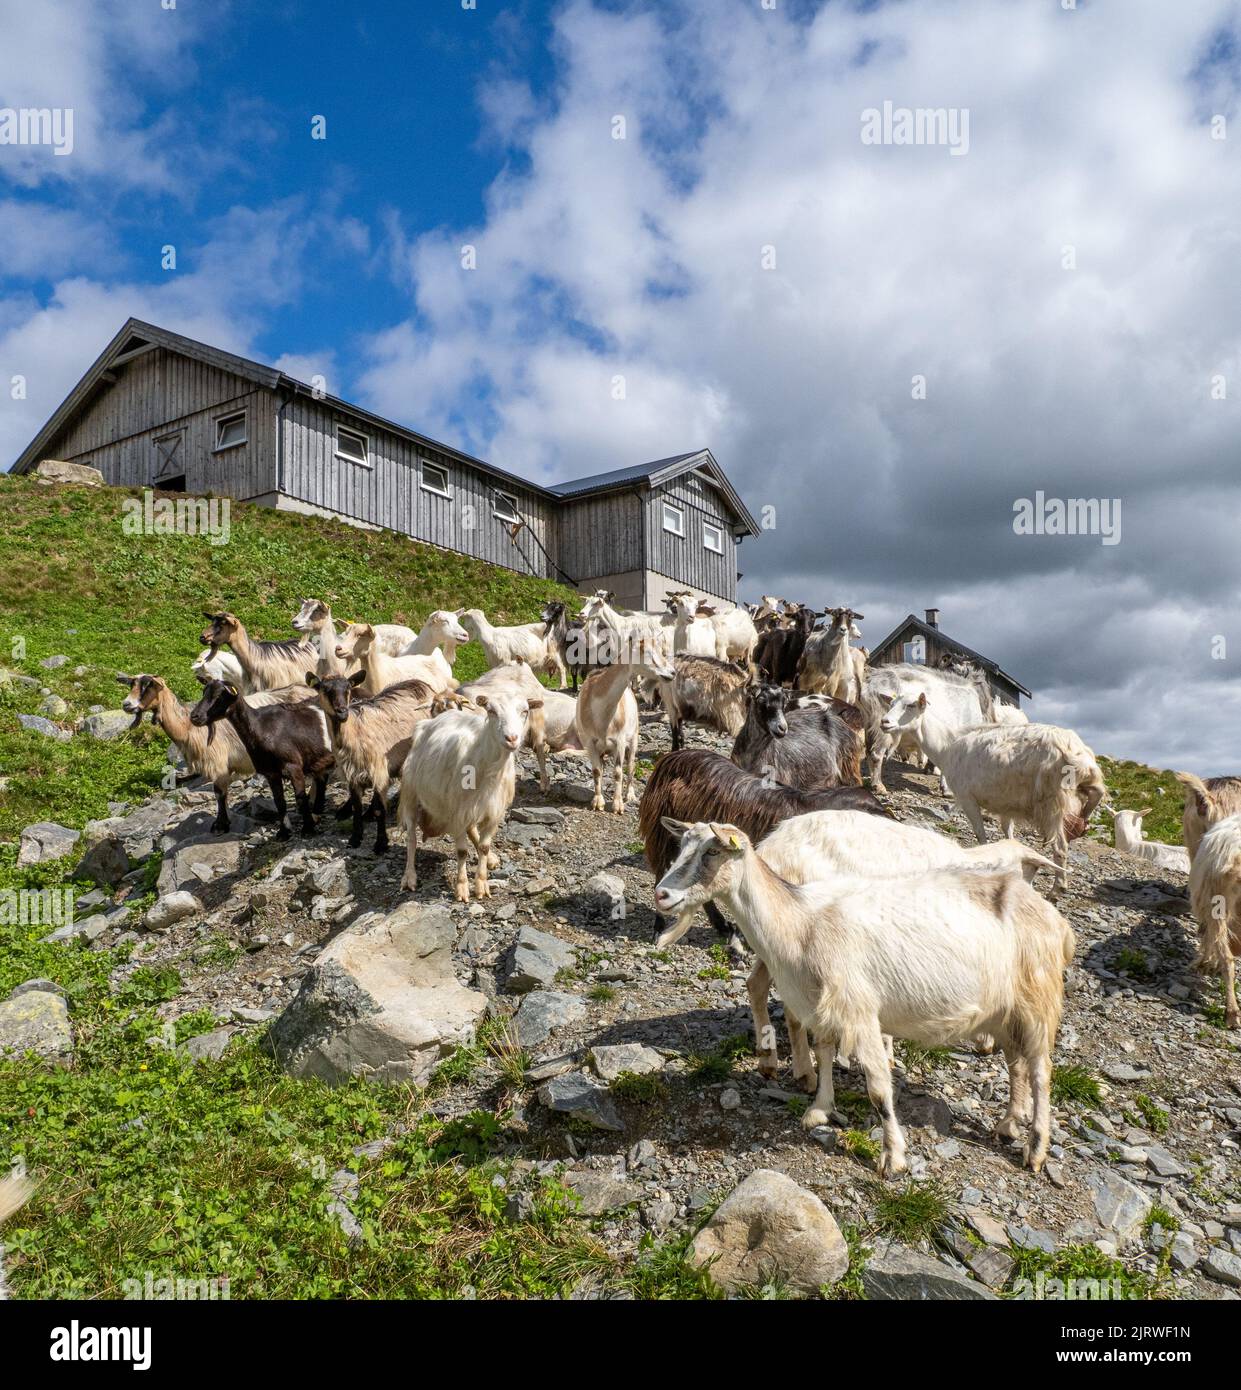 Granja de cabras que produce leche de cabra para productos lácteos en el centro de Noruega Foto de stock